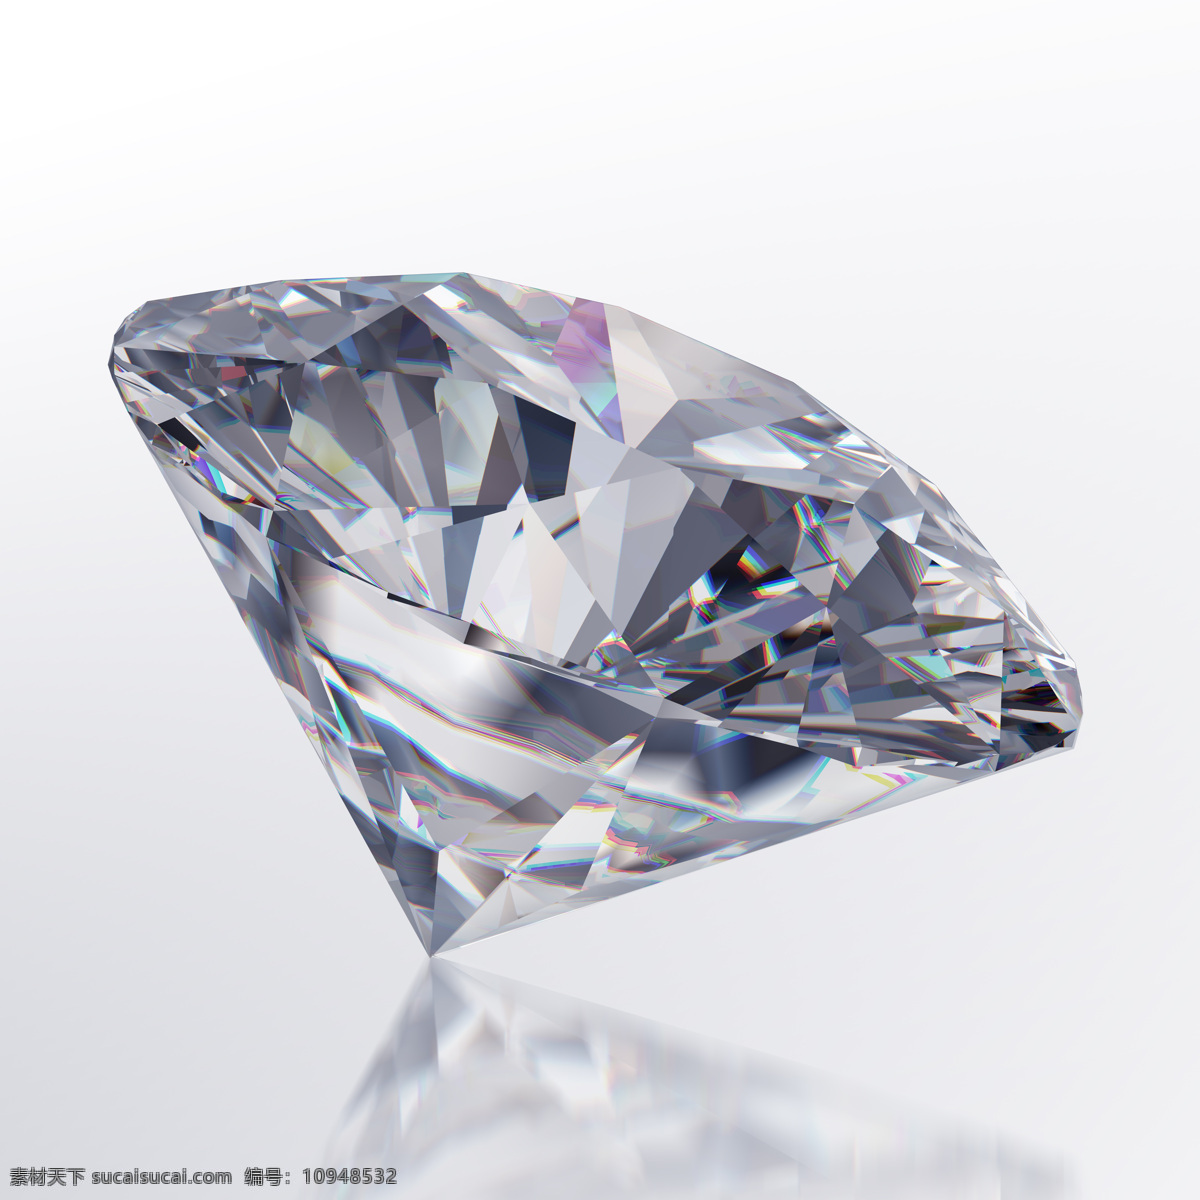 婚 戒 钻石 裸钻 水晶钻石 婚戒钻石 戒指钻石 饰品 珠宝服饰 生活百科